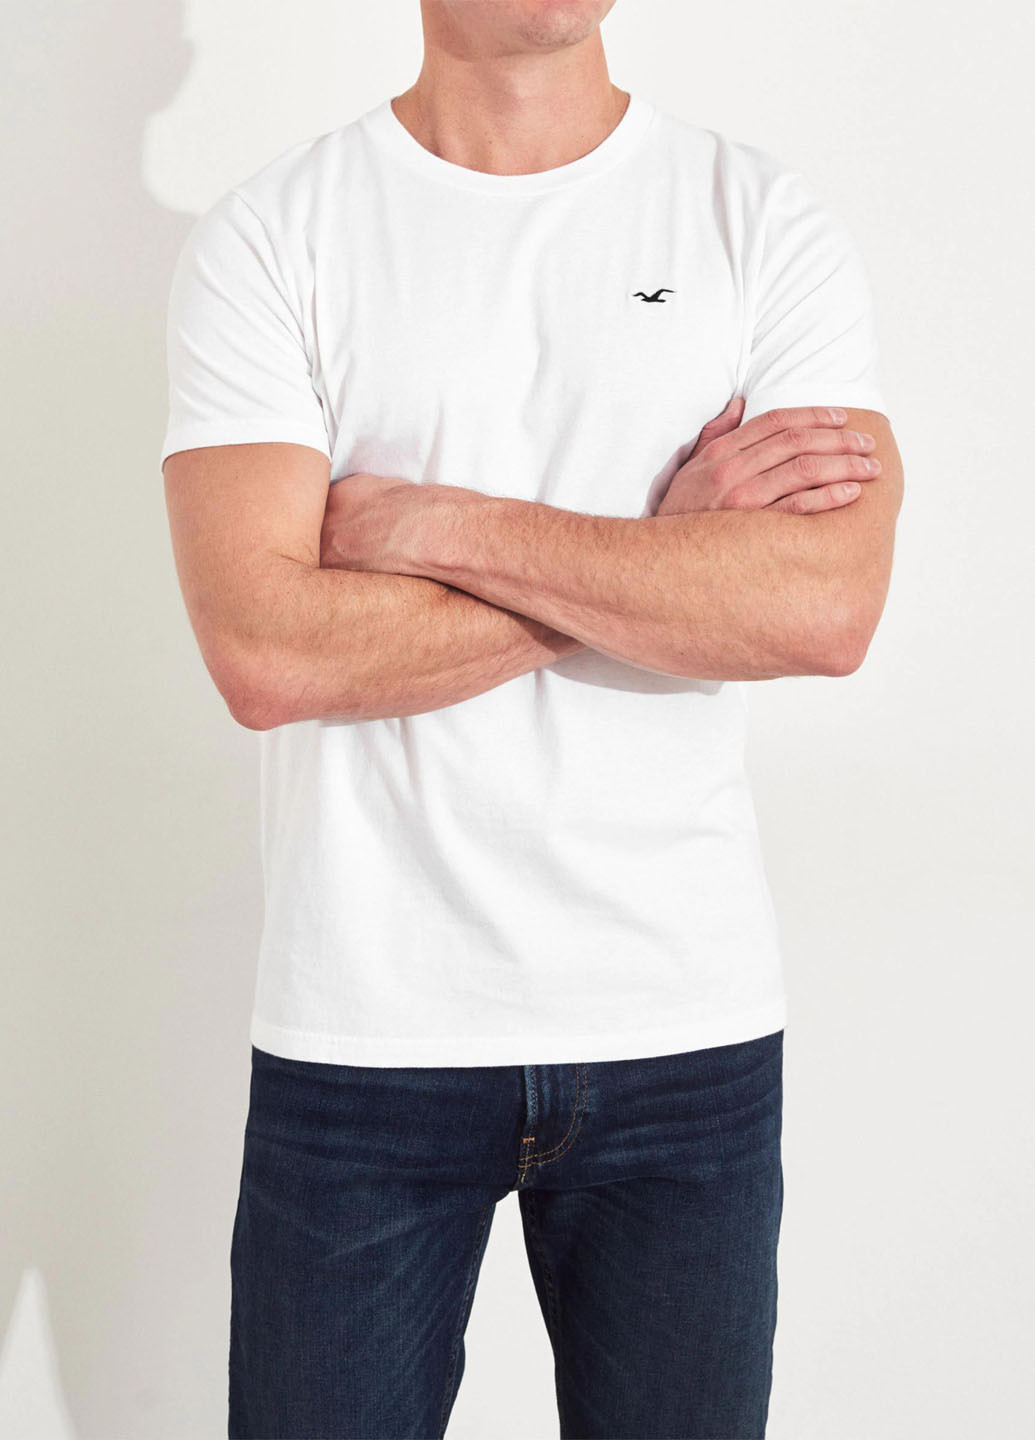 Белая футболка (3 шт.) Hollister